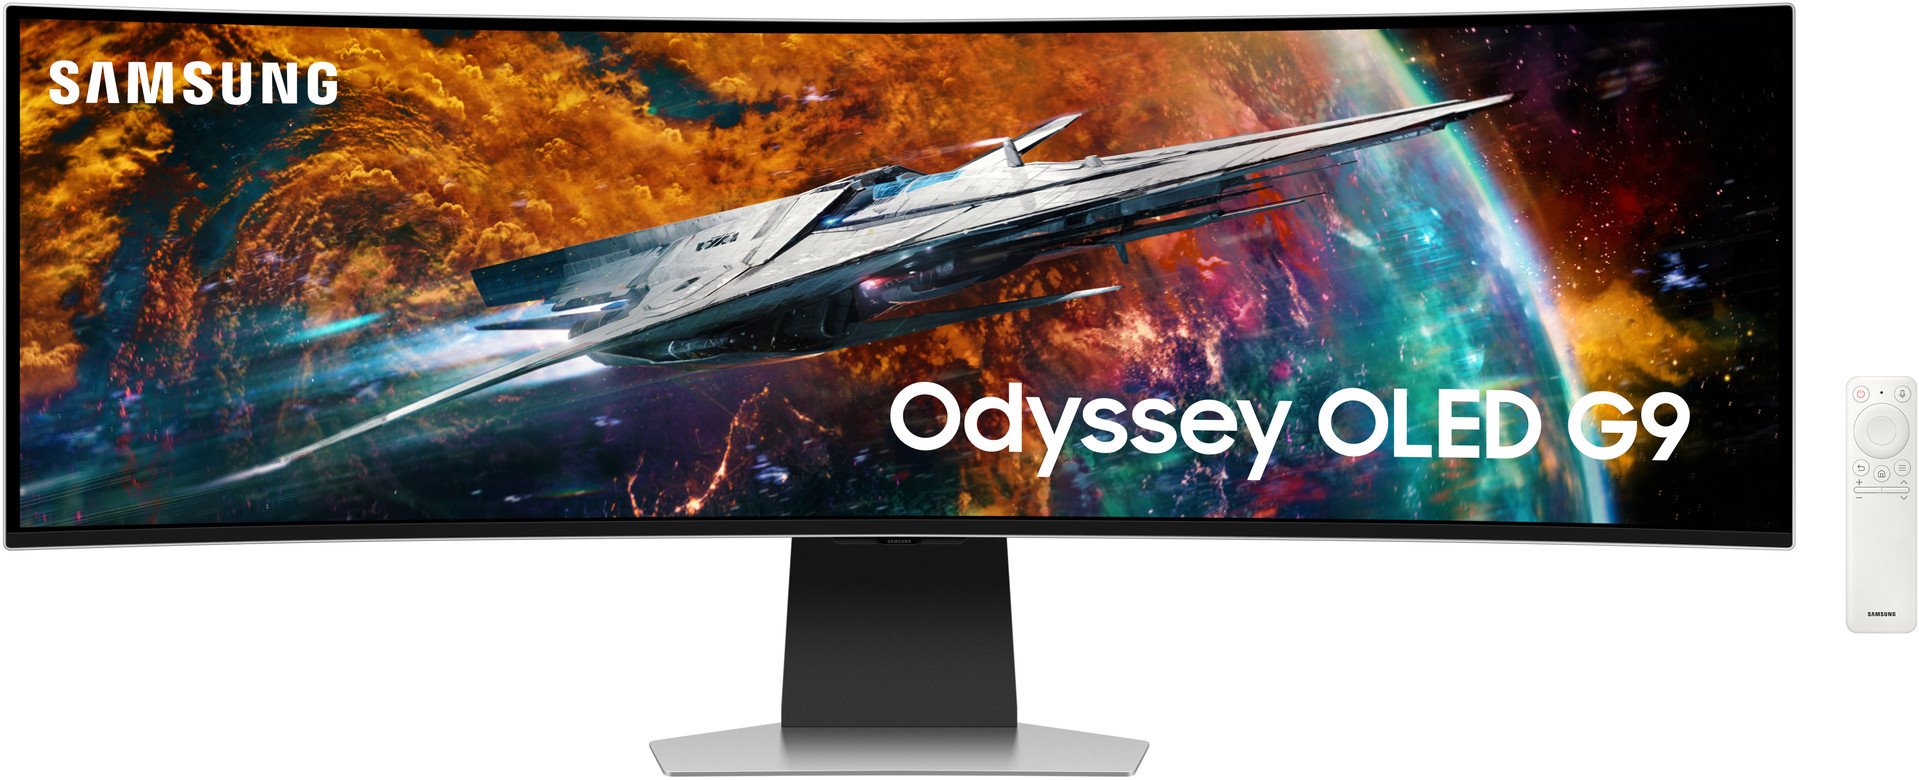 49 Odyssey OLED G9